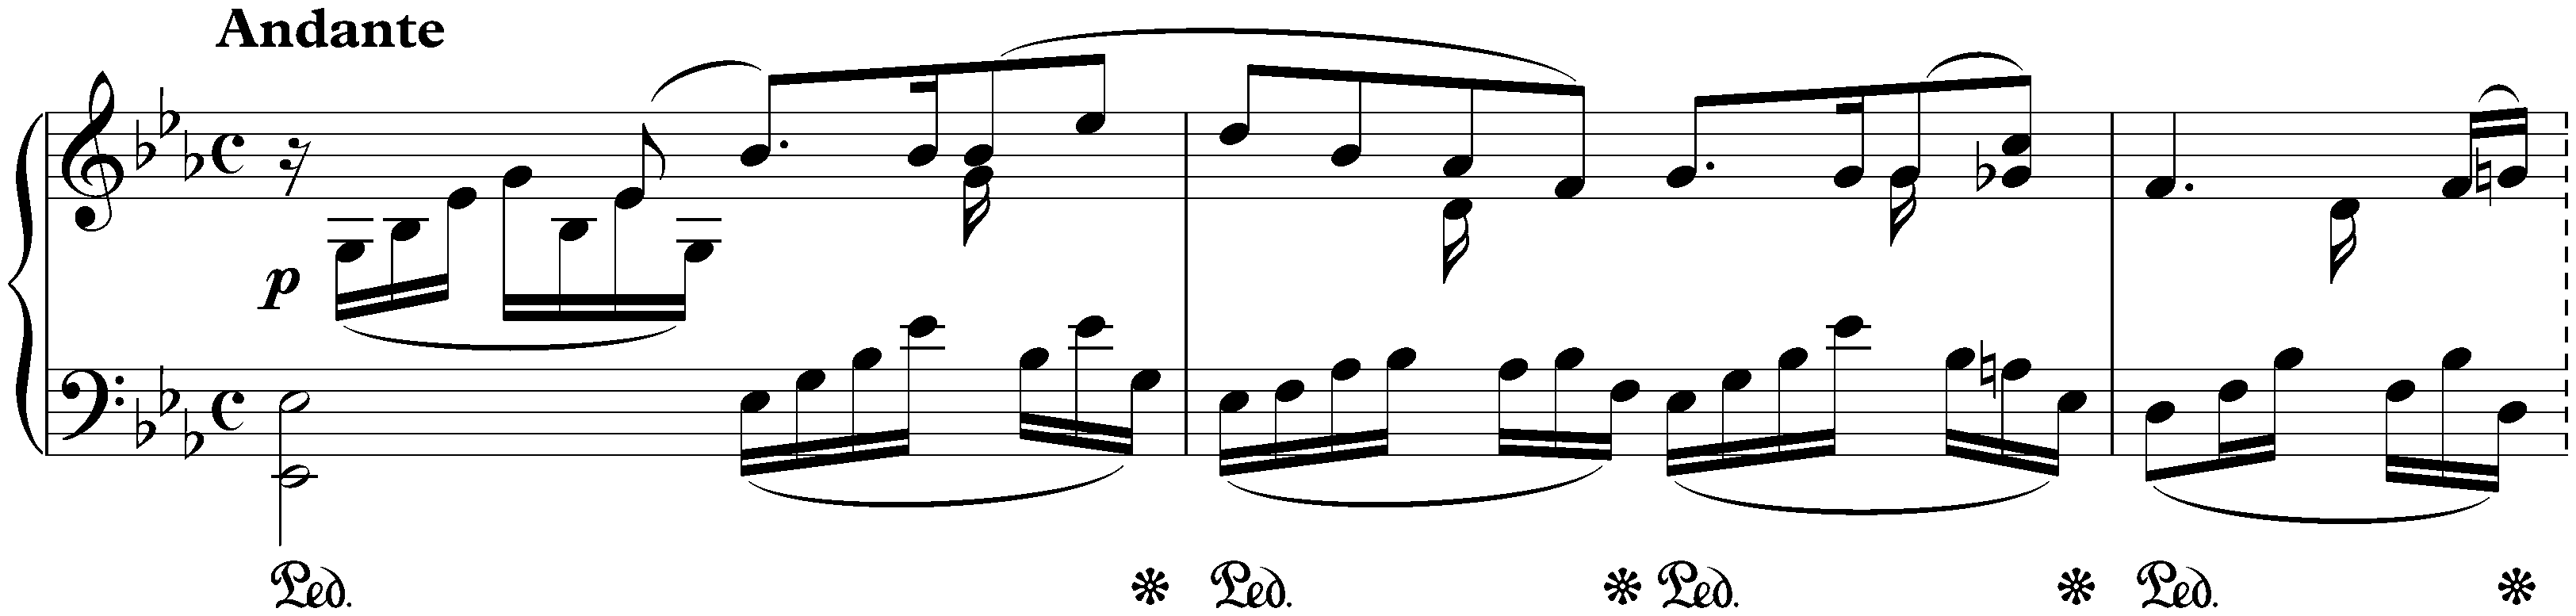 Lieder ohne Worte, Book 6, op. 67; 1. E-flat major